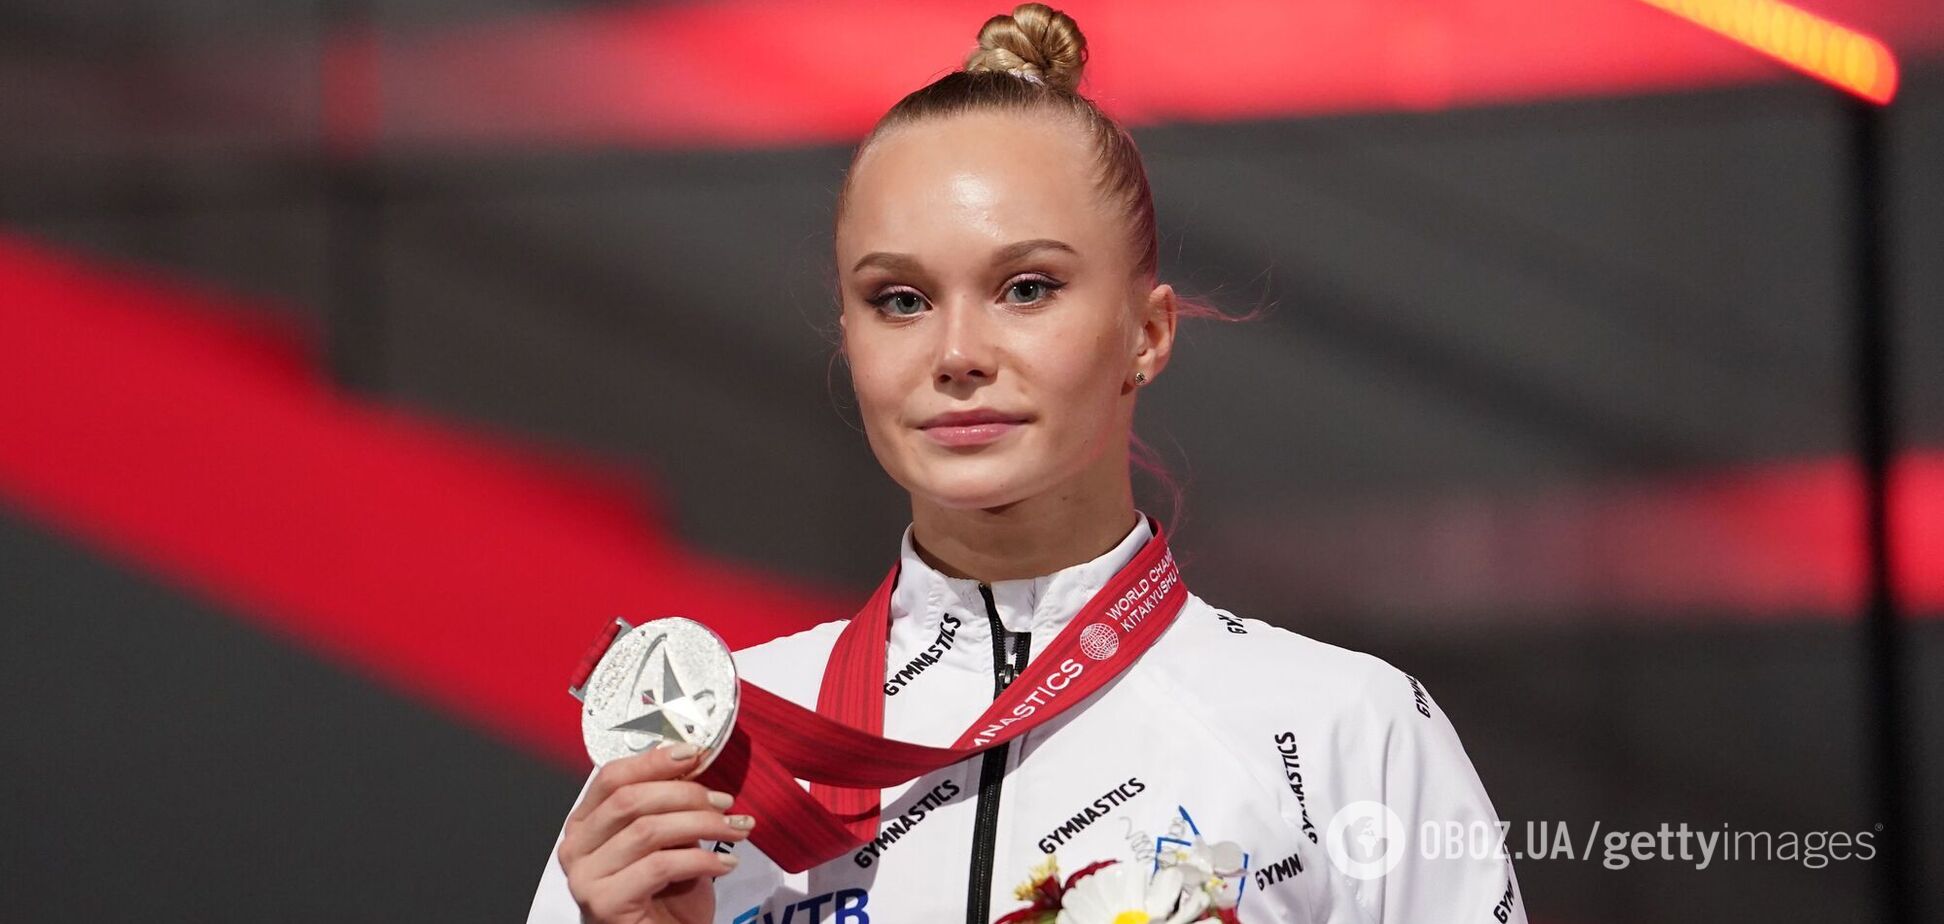 Гимнастка обвинила российские СМИ во лжи после скандала с медалью ЧМ